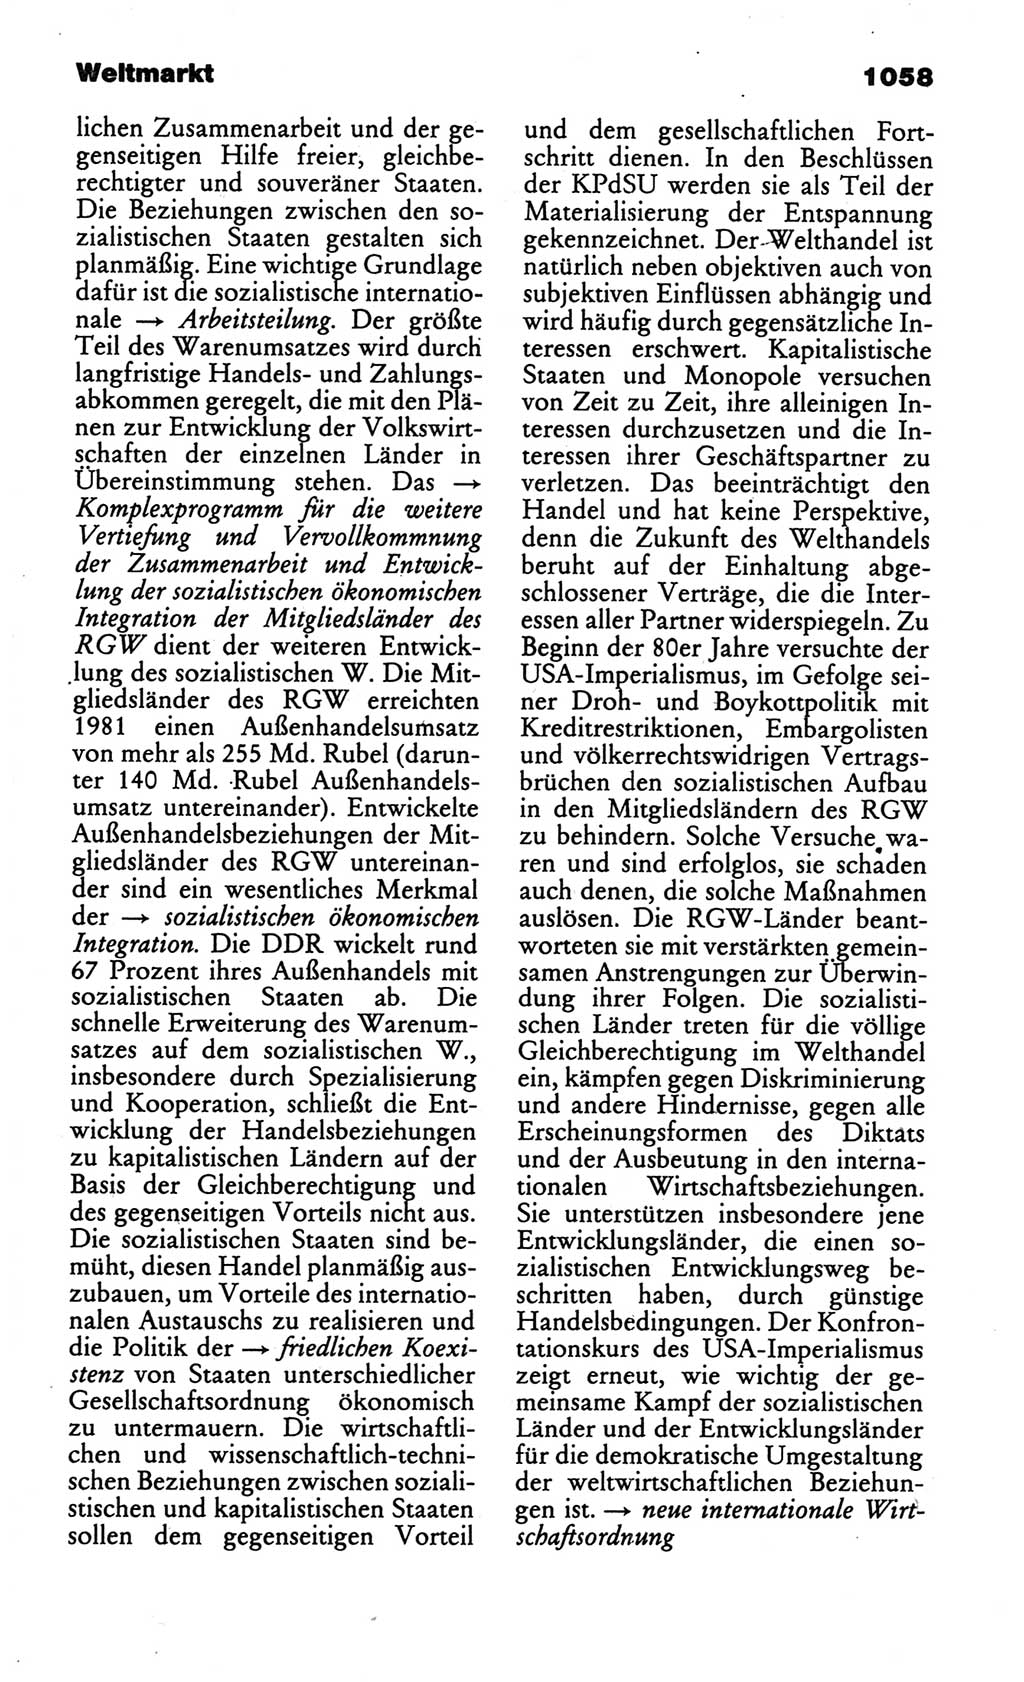 Kleines politisches Wörterbuch [Deutsche Demokratische Republik (DDR)] 1986, Seite 1058 (Kl. pol. Wb. DDR 1986, S. 1058)